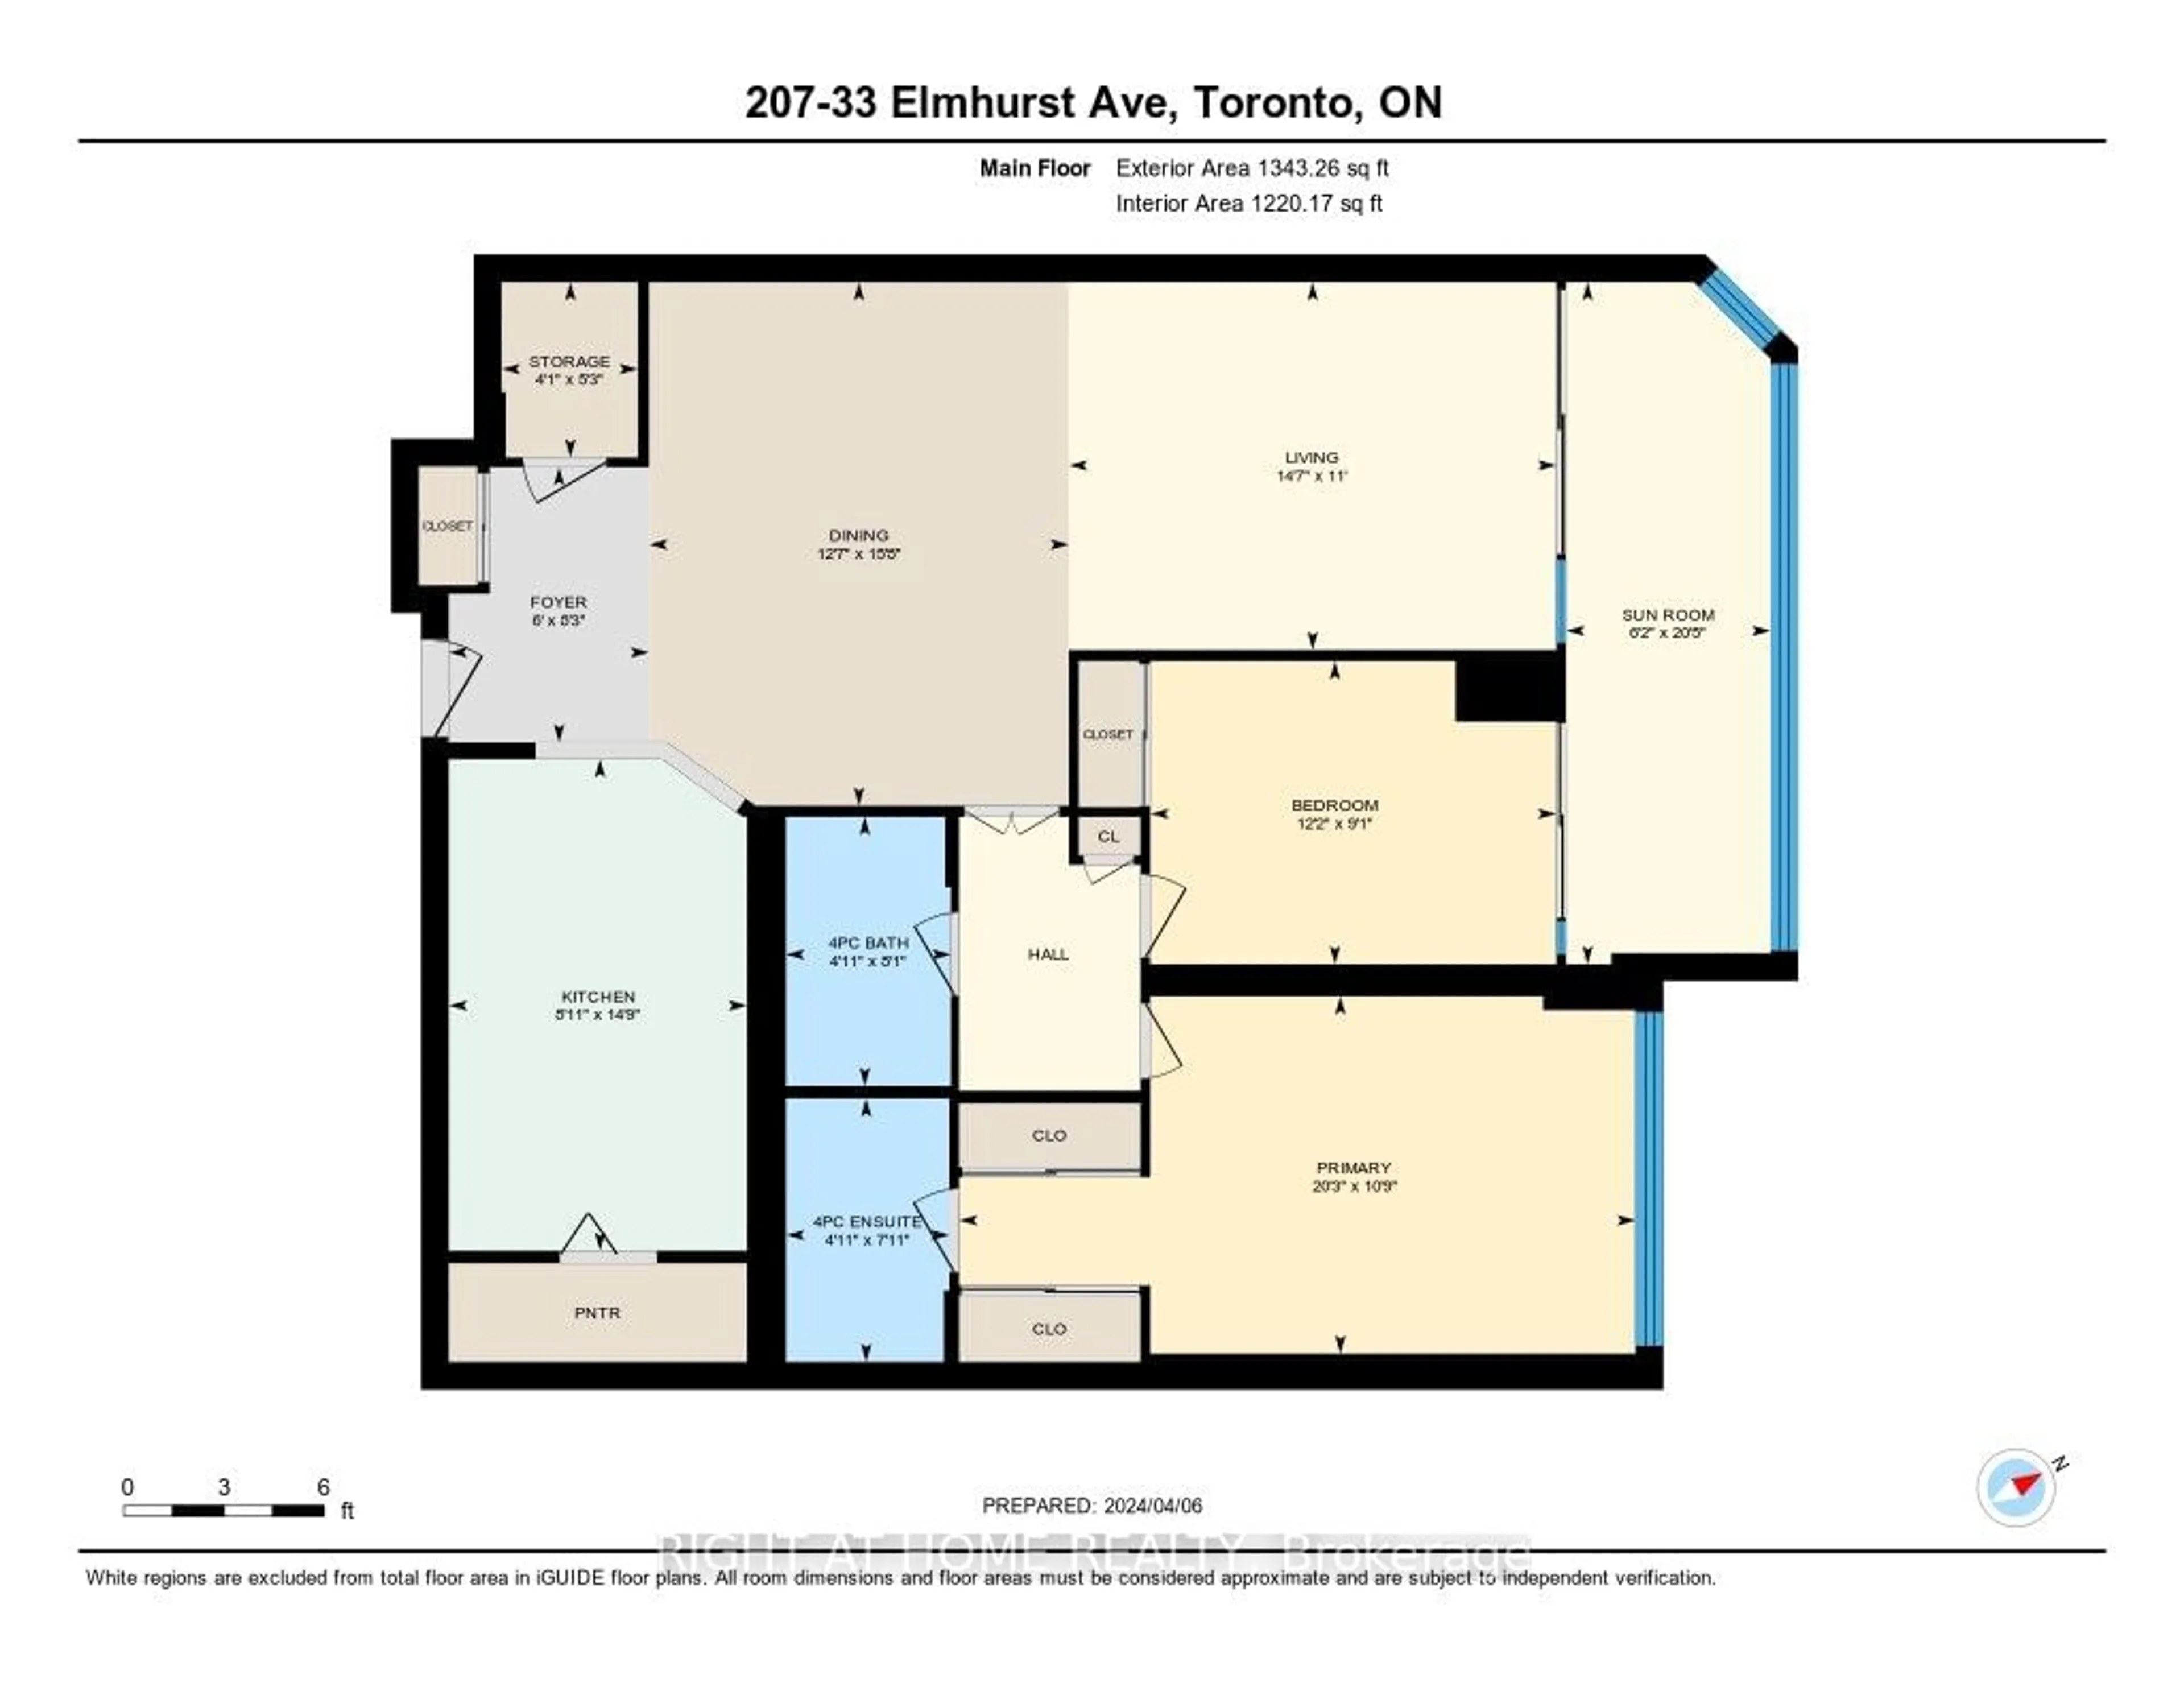 Floor plan for 33 Elmhurst Ave #207, Toronto Ontario M2N 6G8